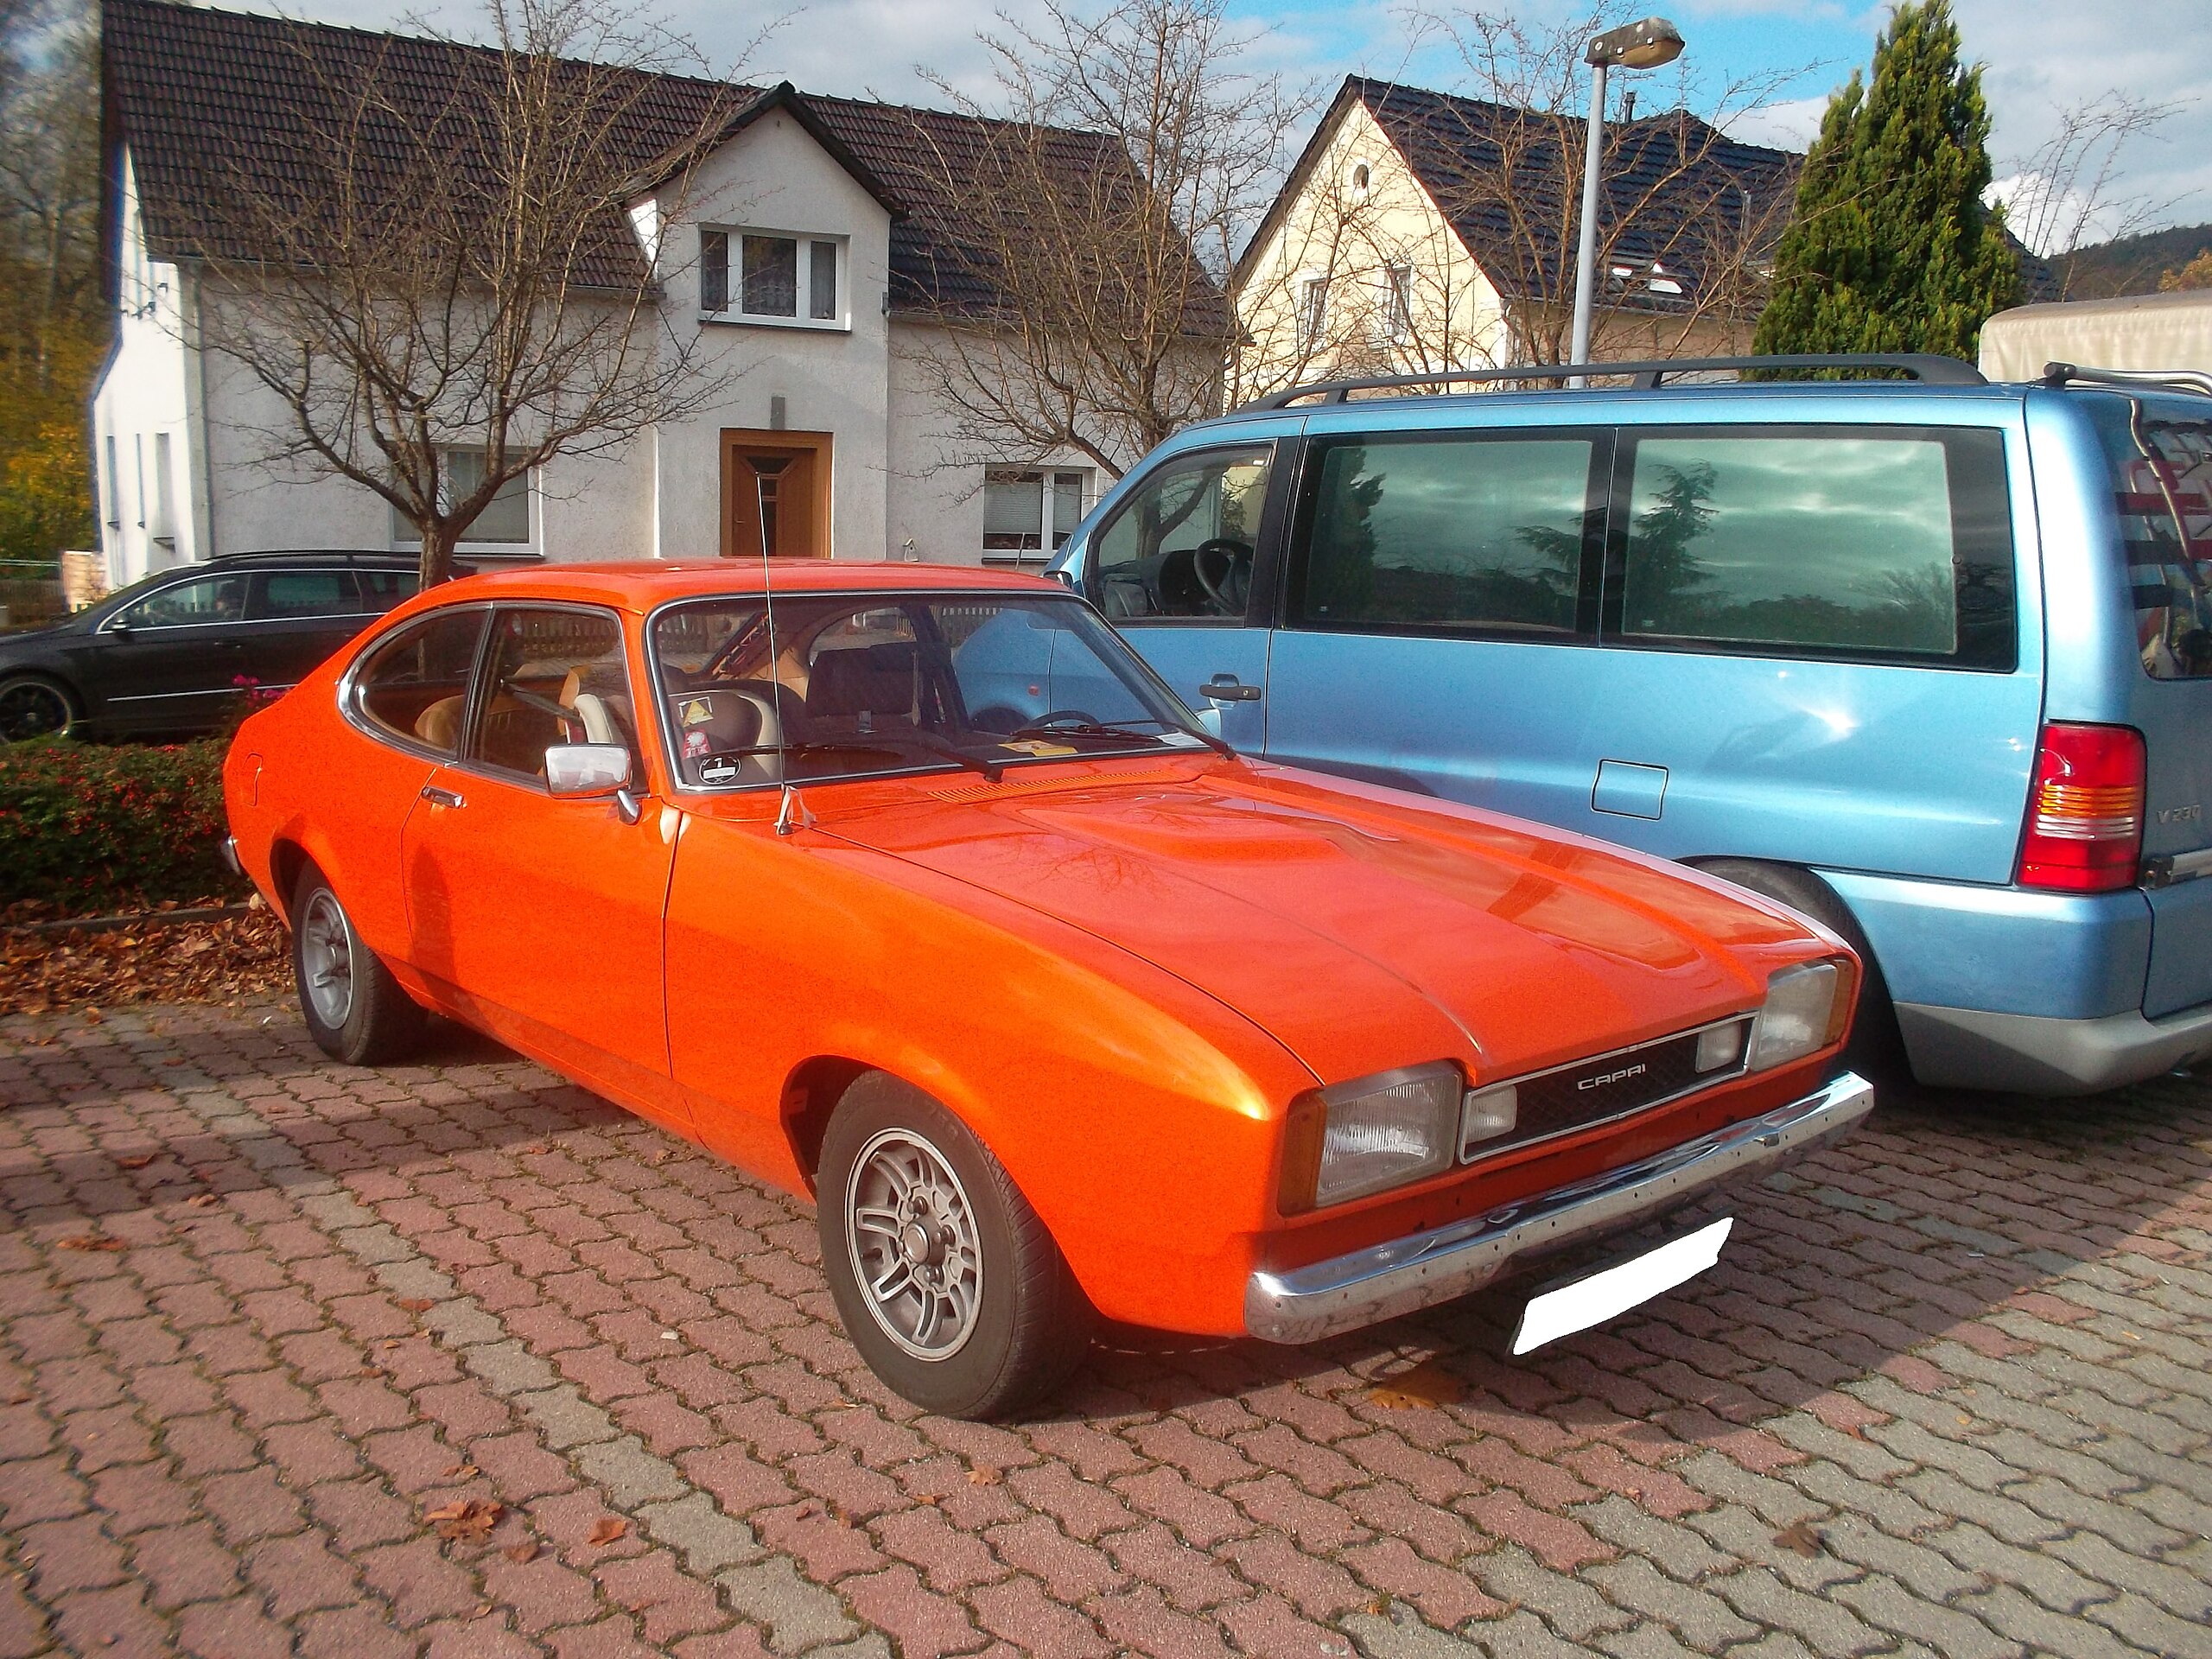 File:Orange Ford Capri II.jpg - Wikimedia Commons